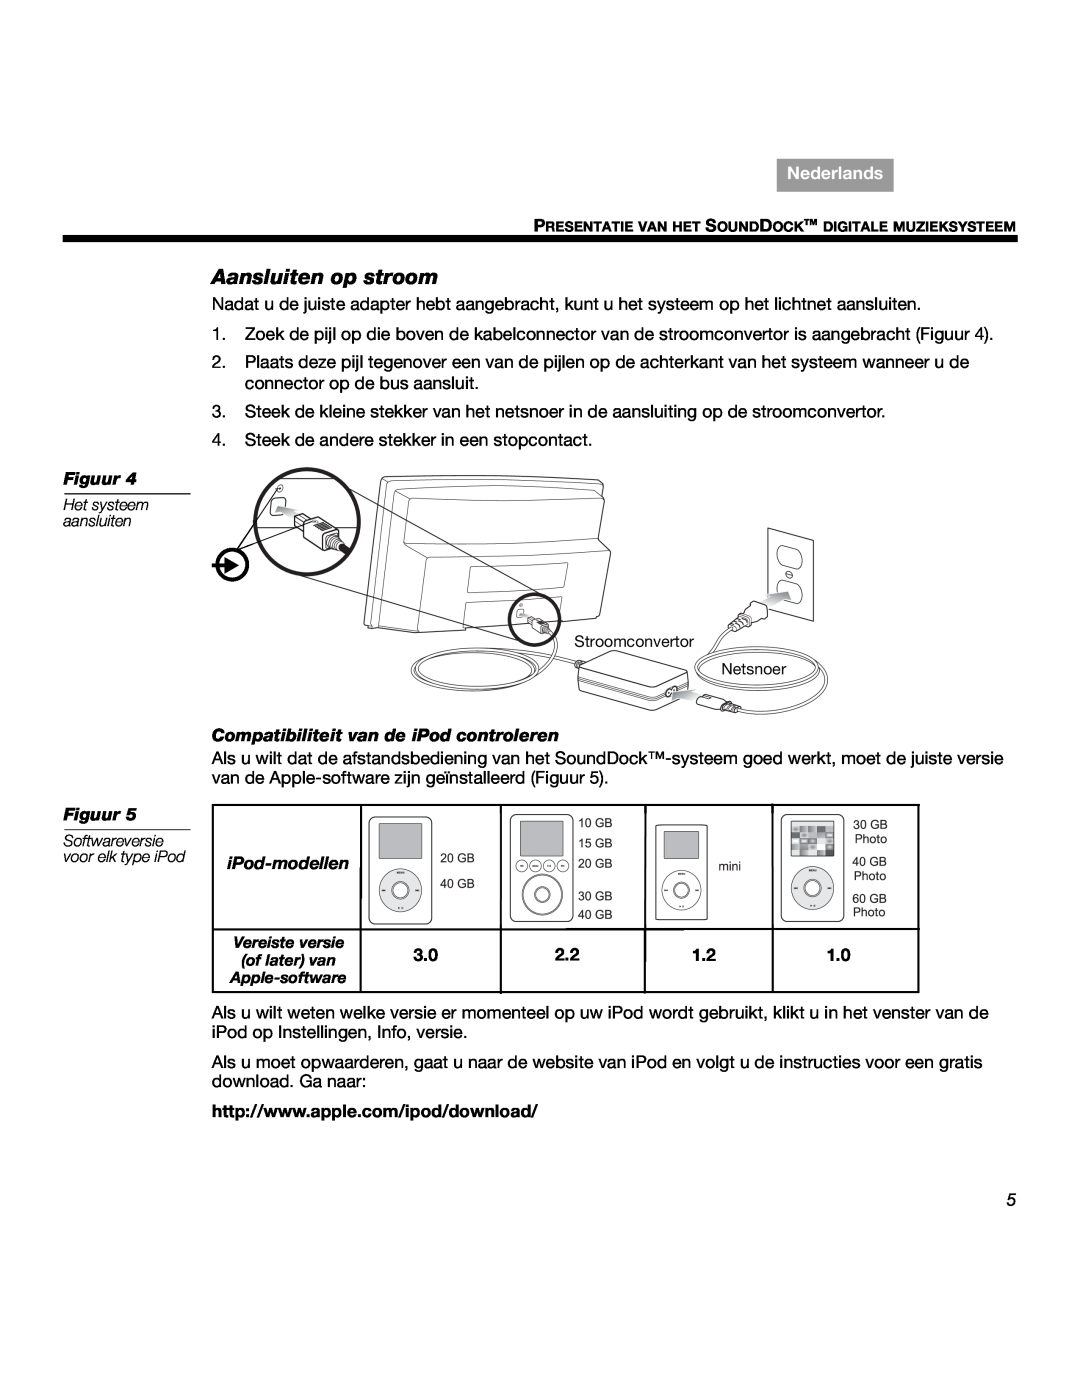 Bose SOUNDDOCKTM manual Aansluiten op stroom, Compatibiliteit van de iPod controleren, iPod-modellen, Nederlands, Figuur 